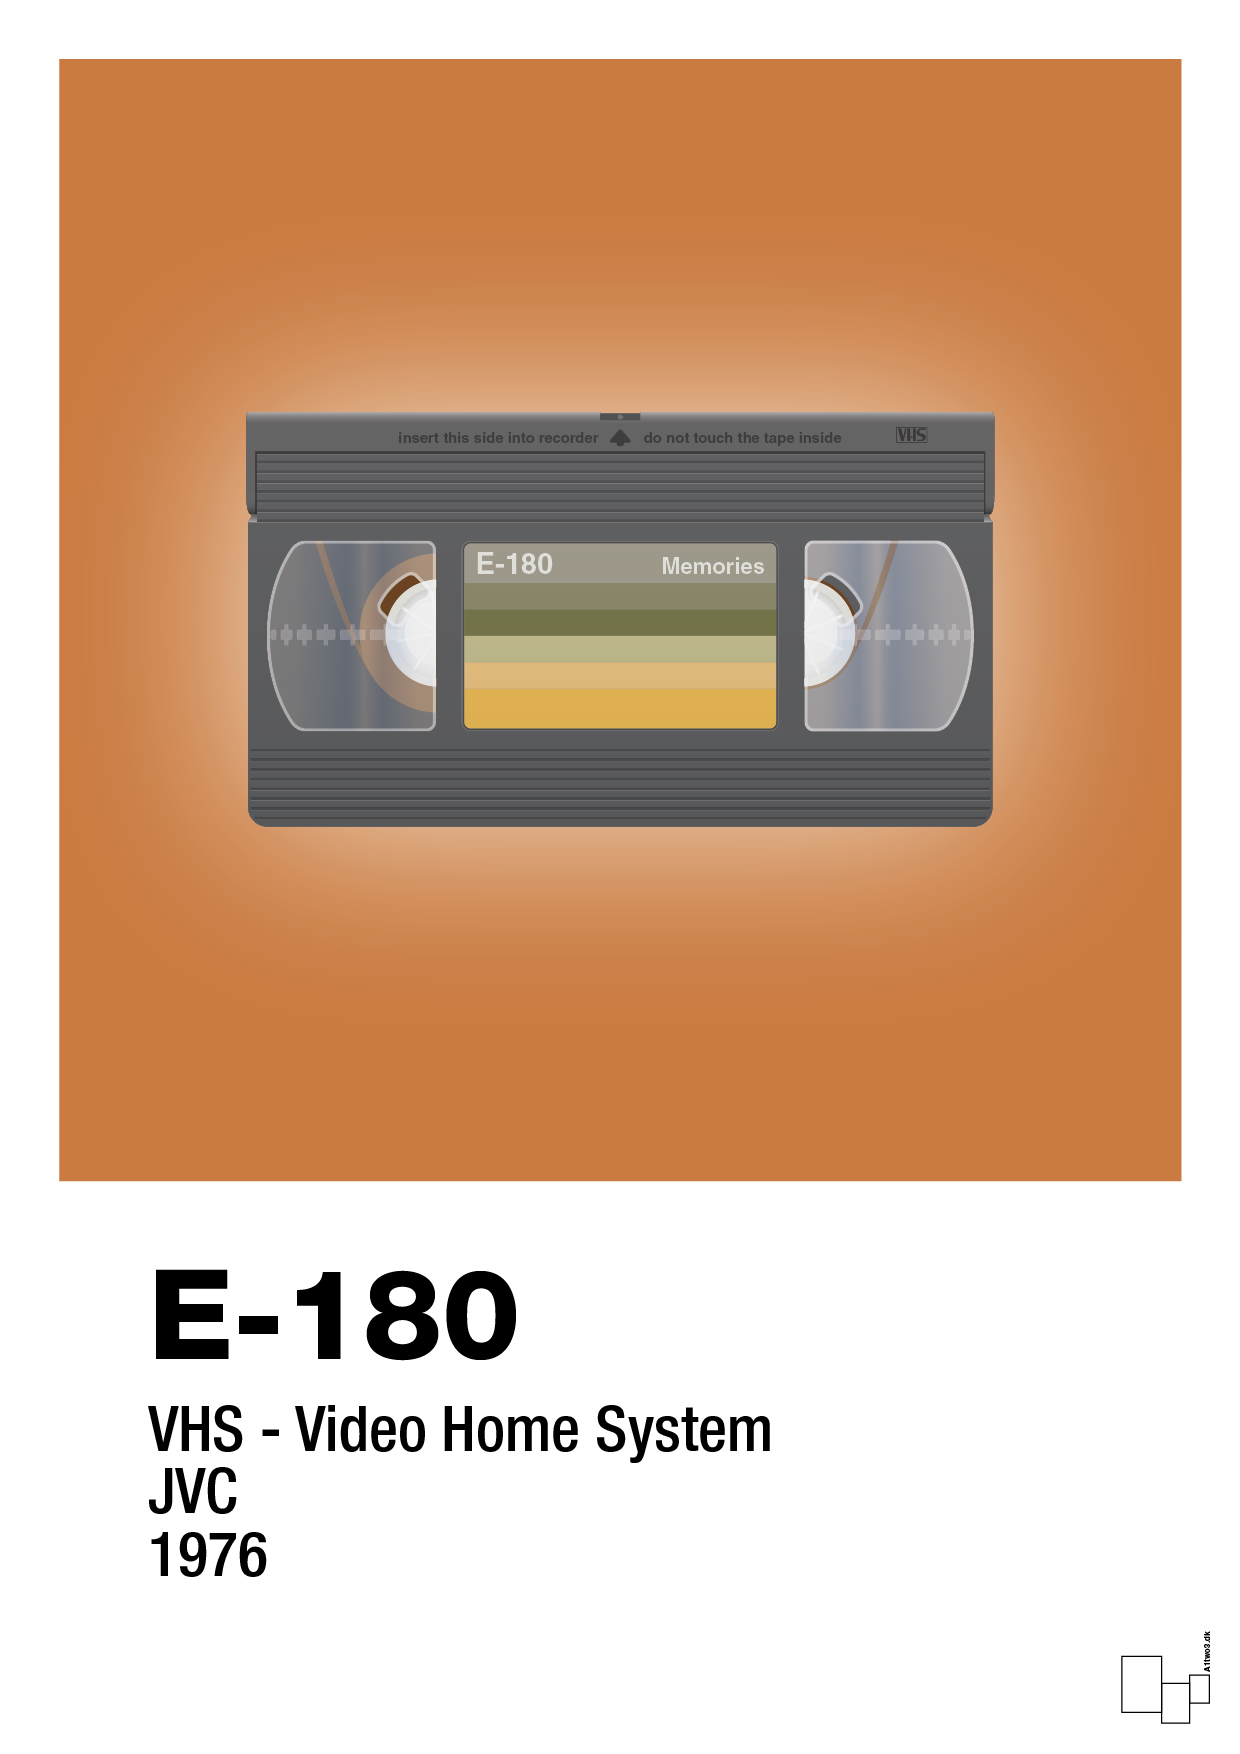 videobånd e-180 - Plakat med Grafik i Rumba Orange